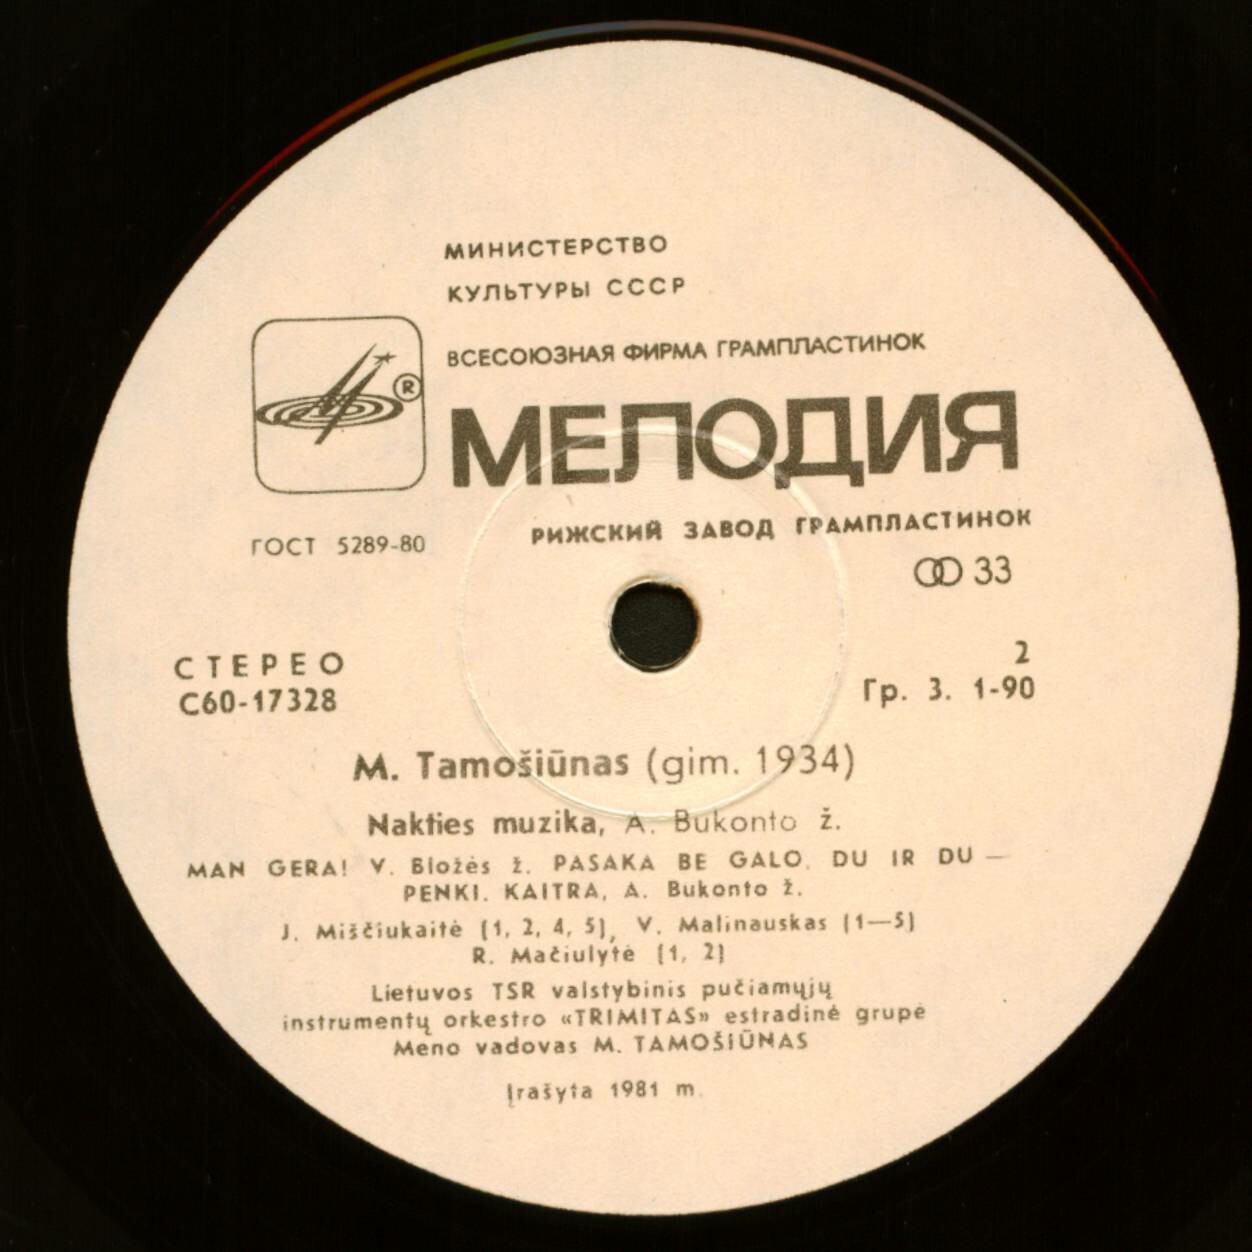 М. ТАМОШЮНАС (р. 1934)